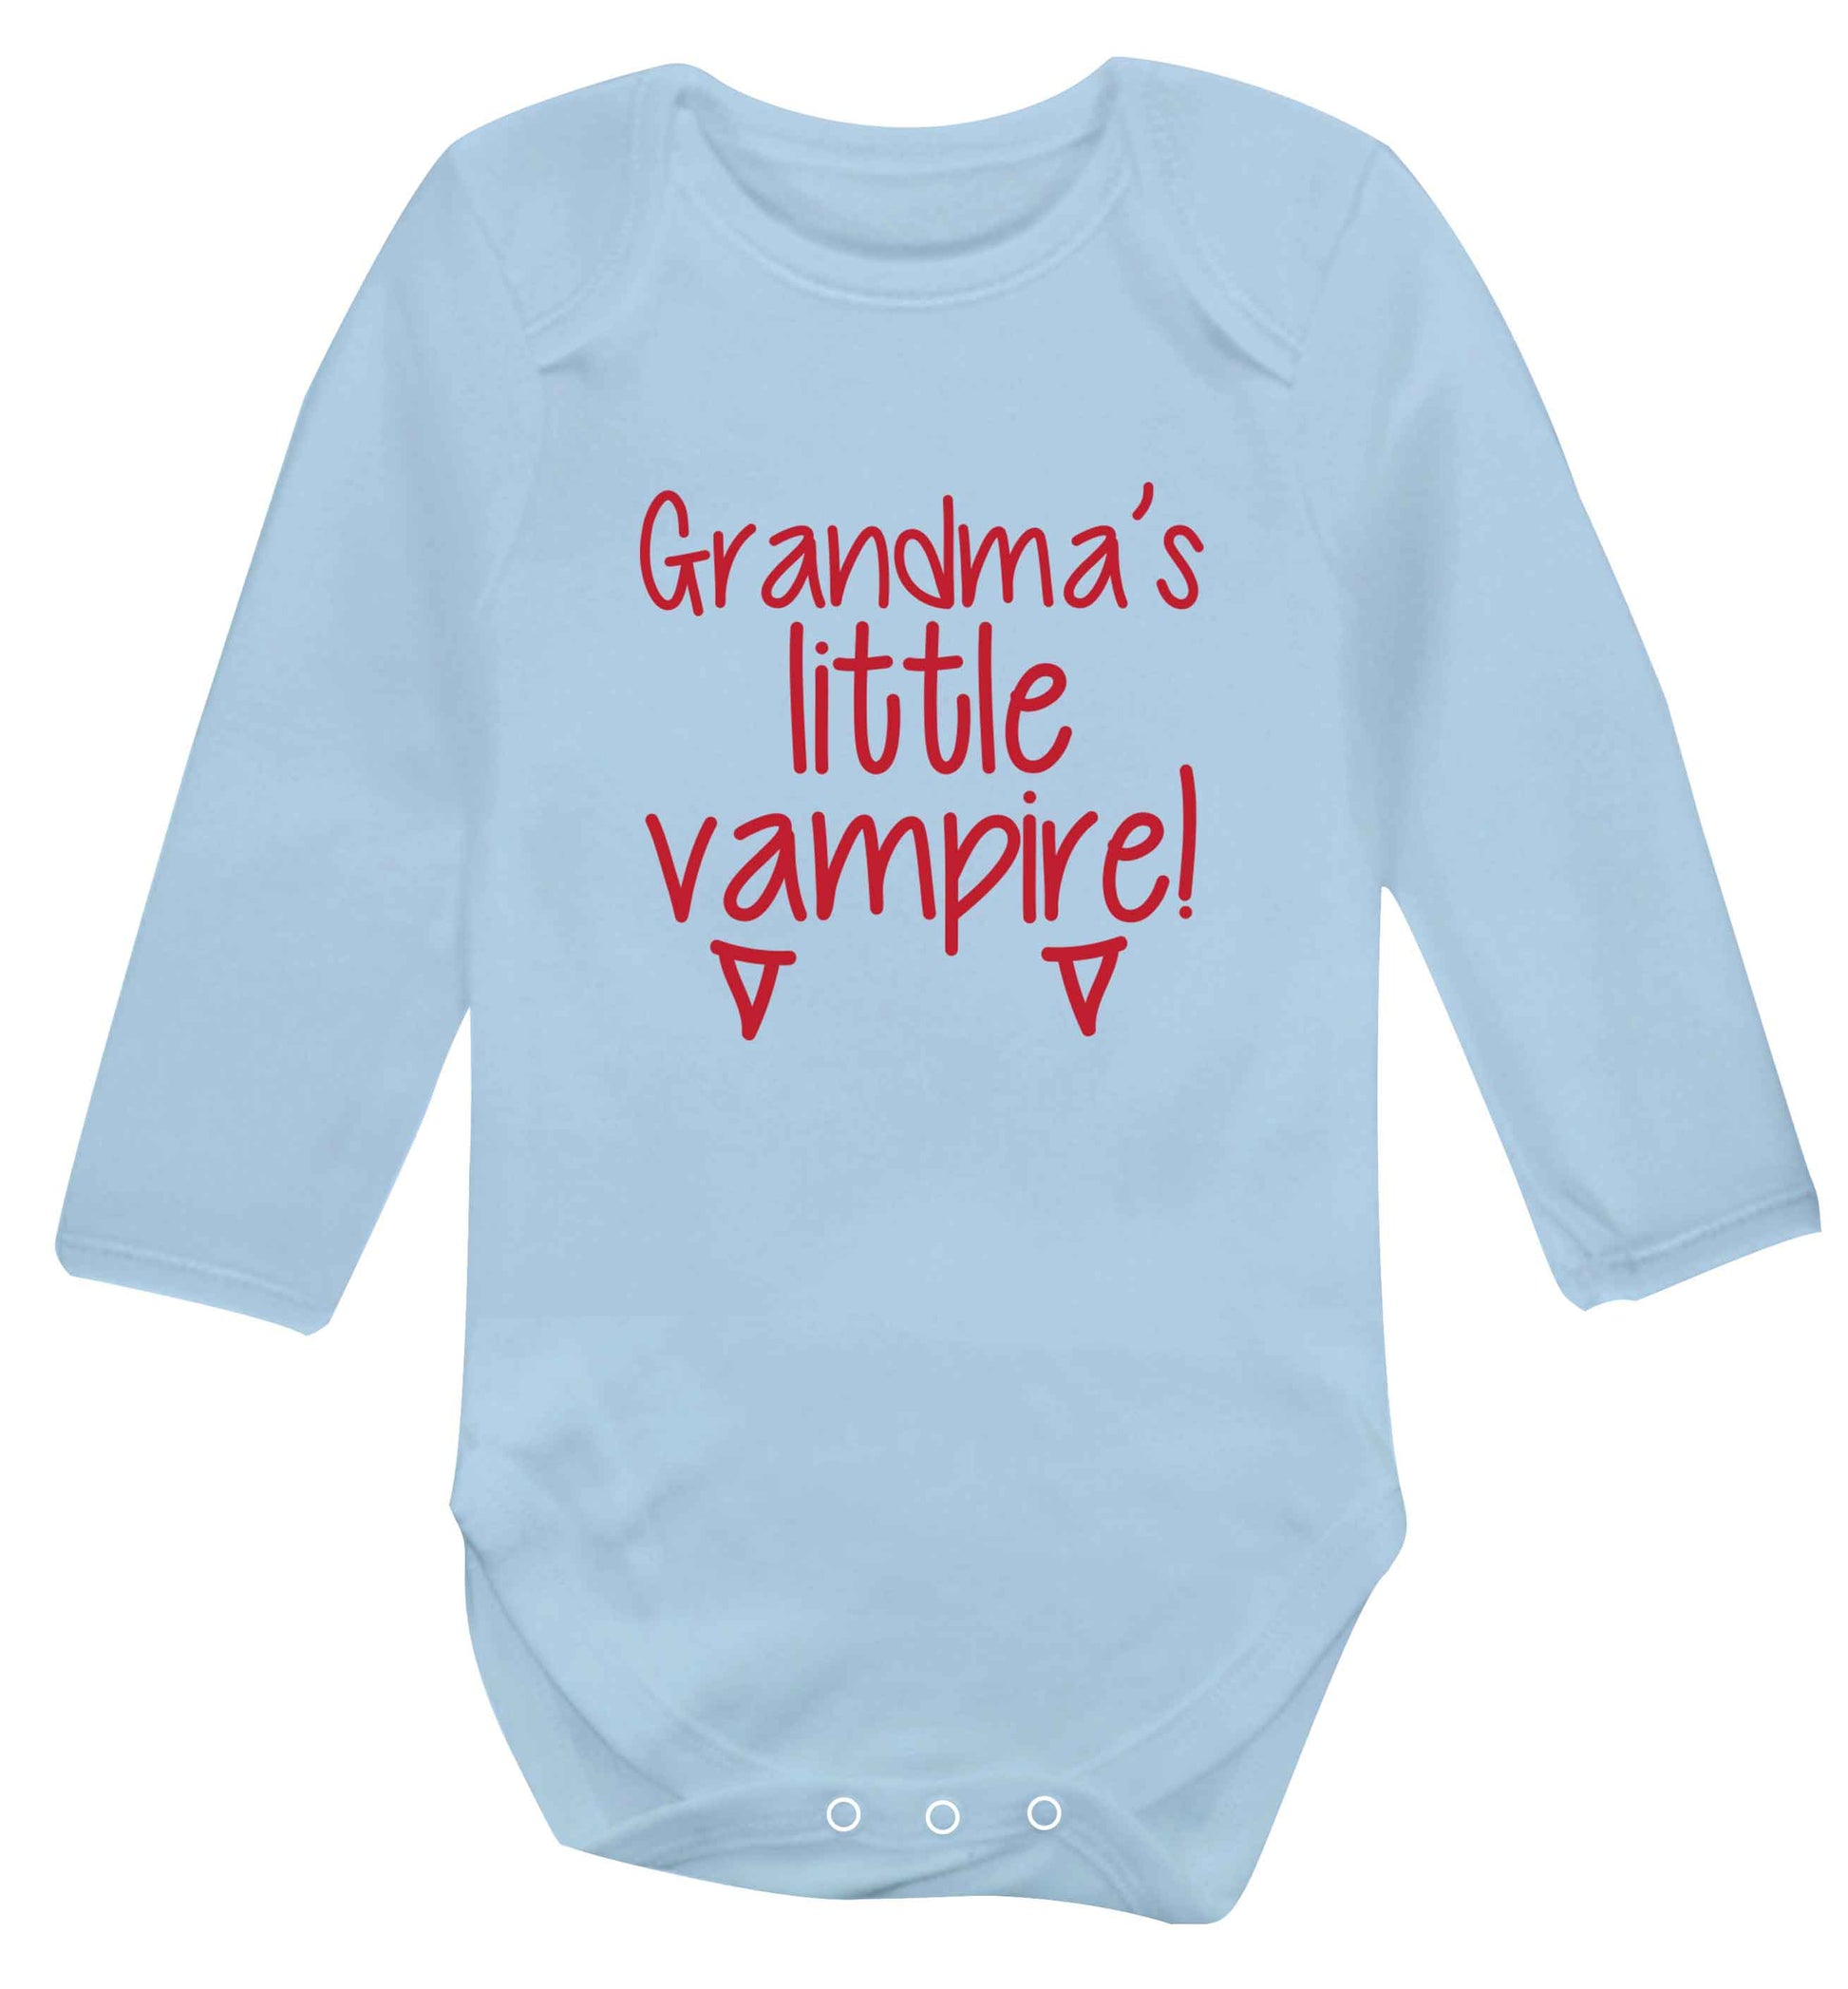 Grandma's little vampire baby vest long sleeved pale blue 6-12 months